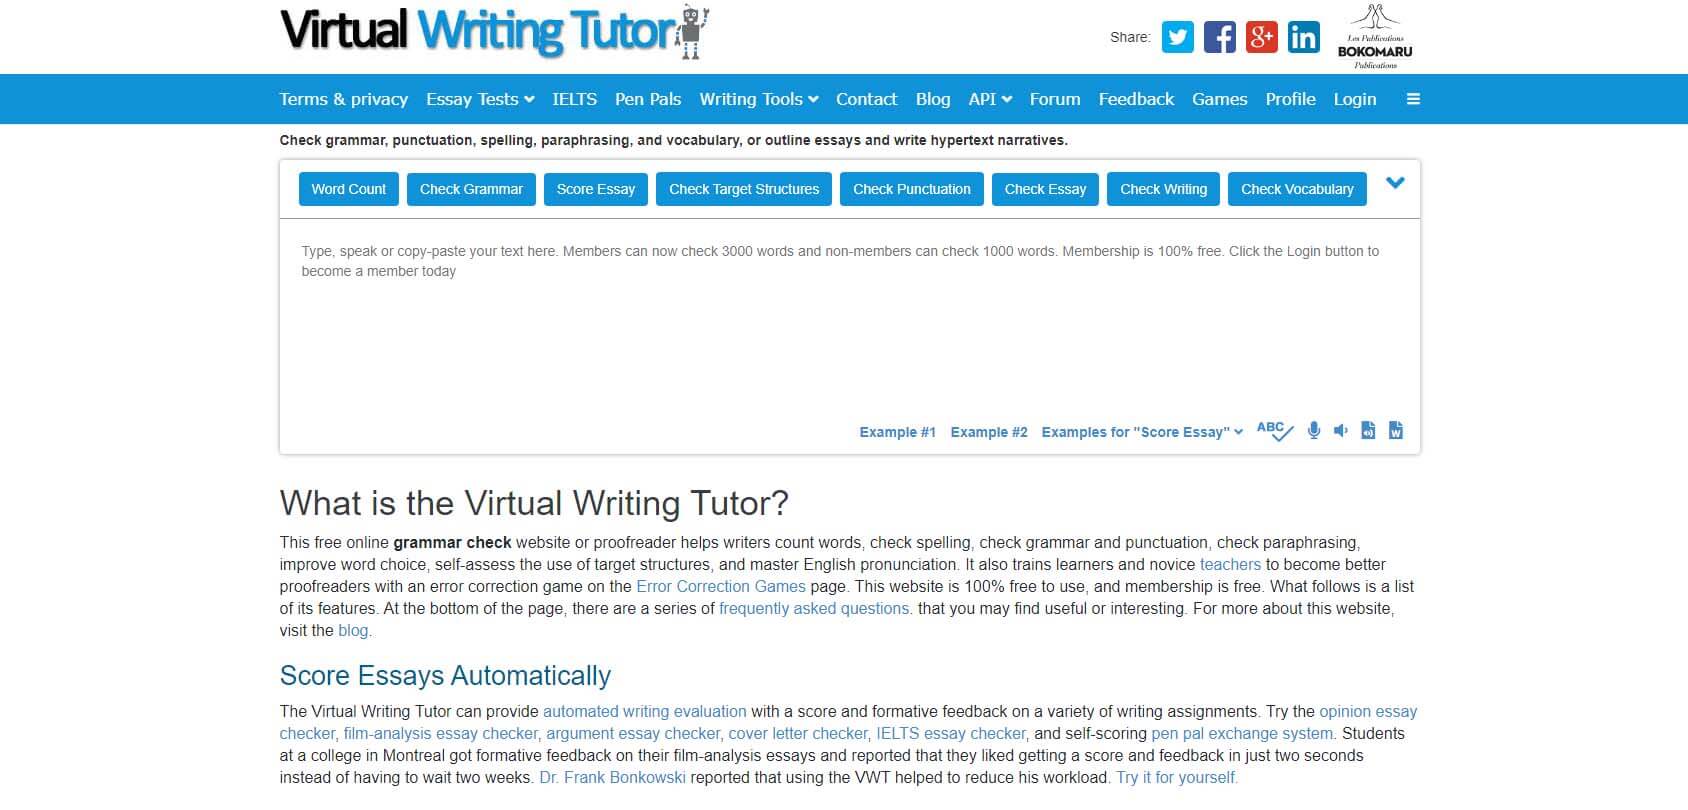 Virtual Writing Tutor homepage